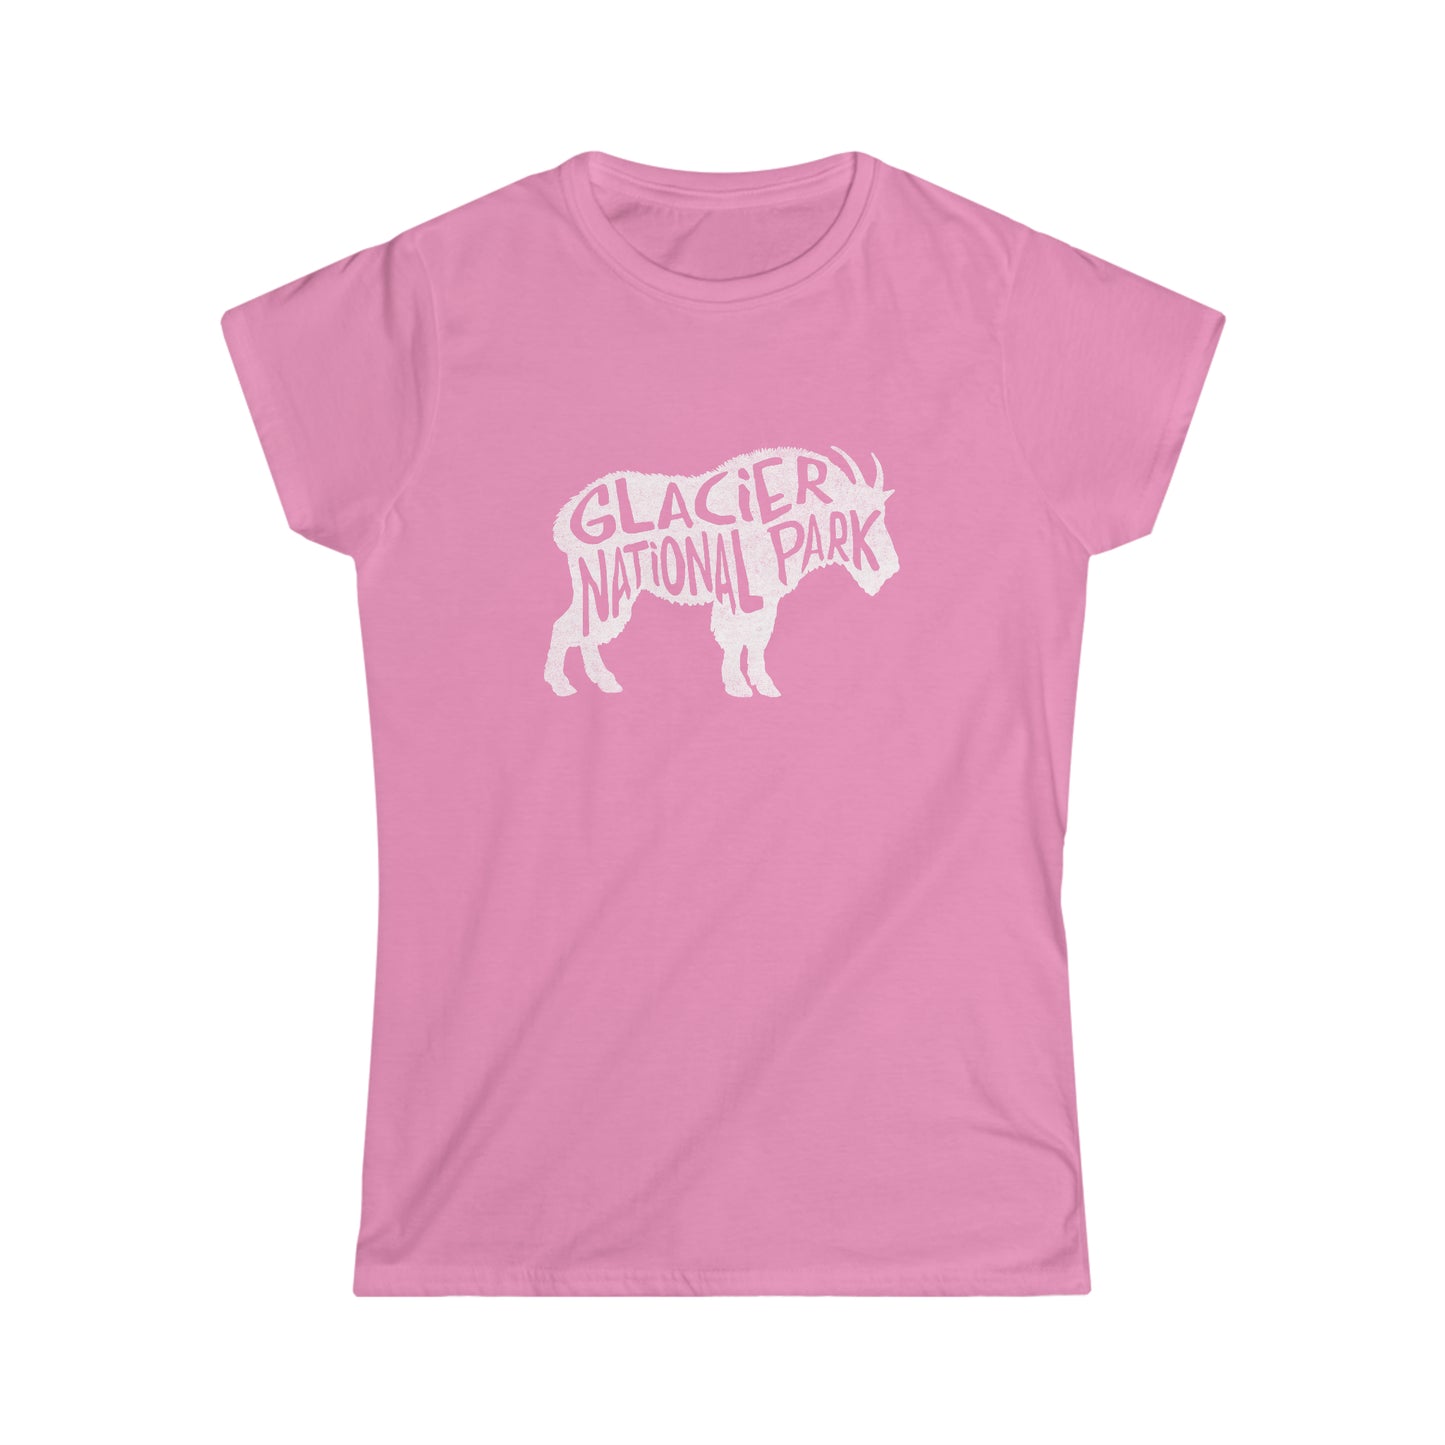 Glacier National Park Women's T-Shirt - Mountain Goat